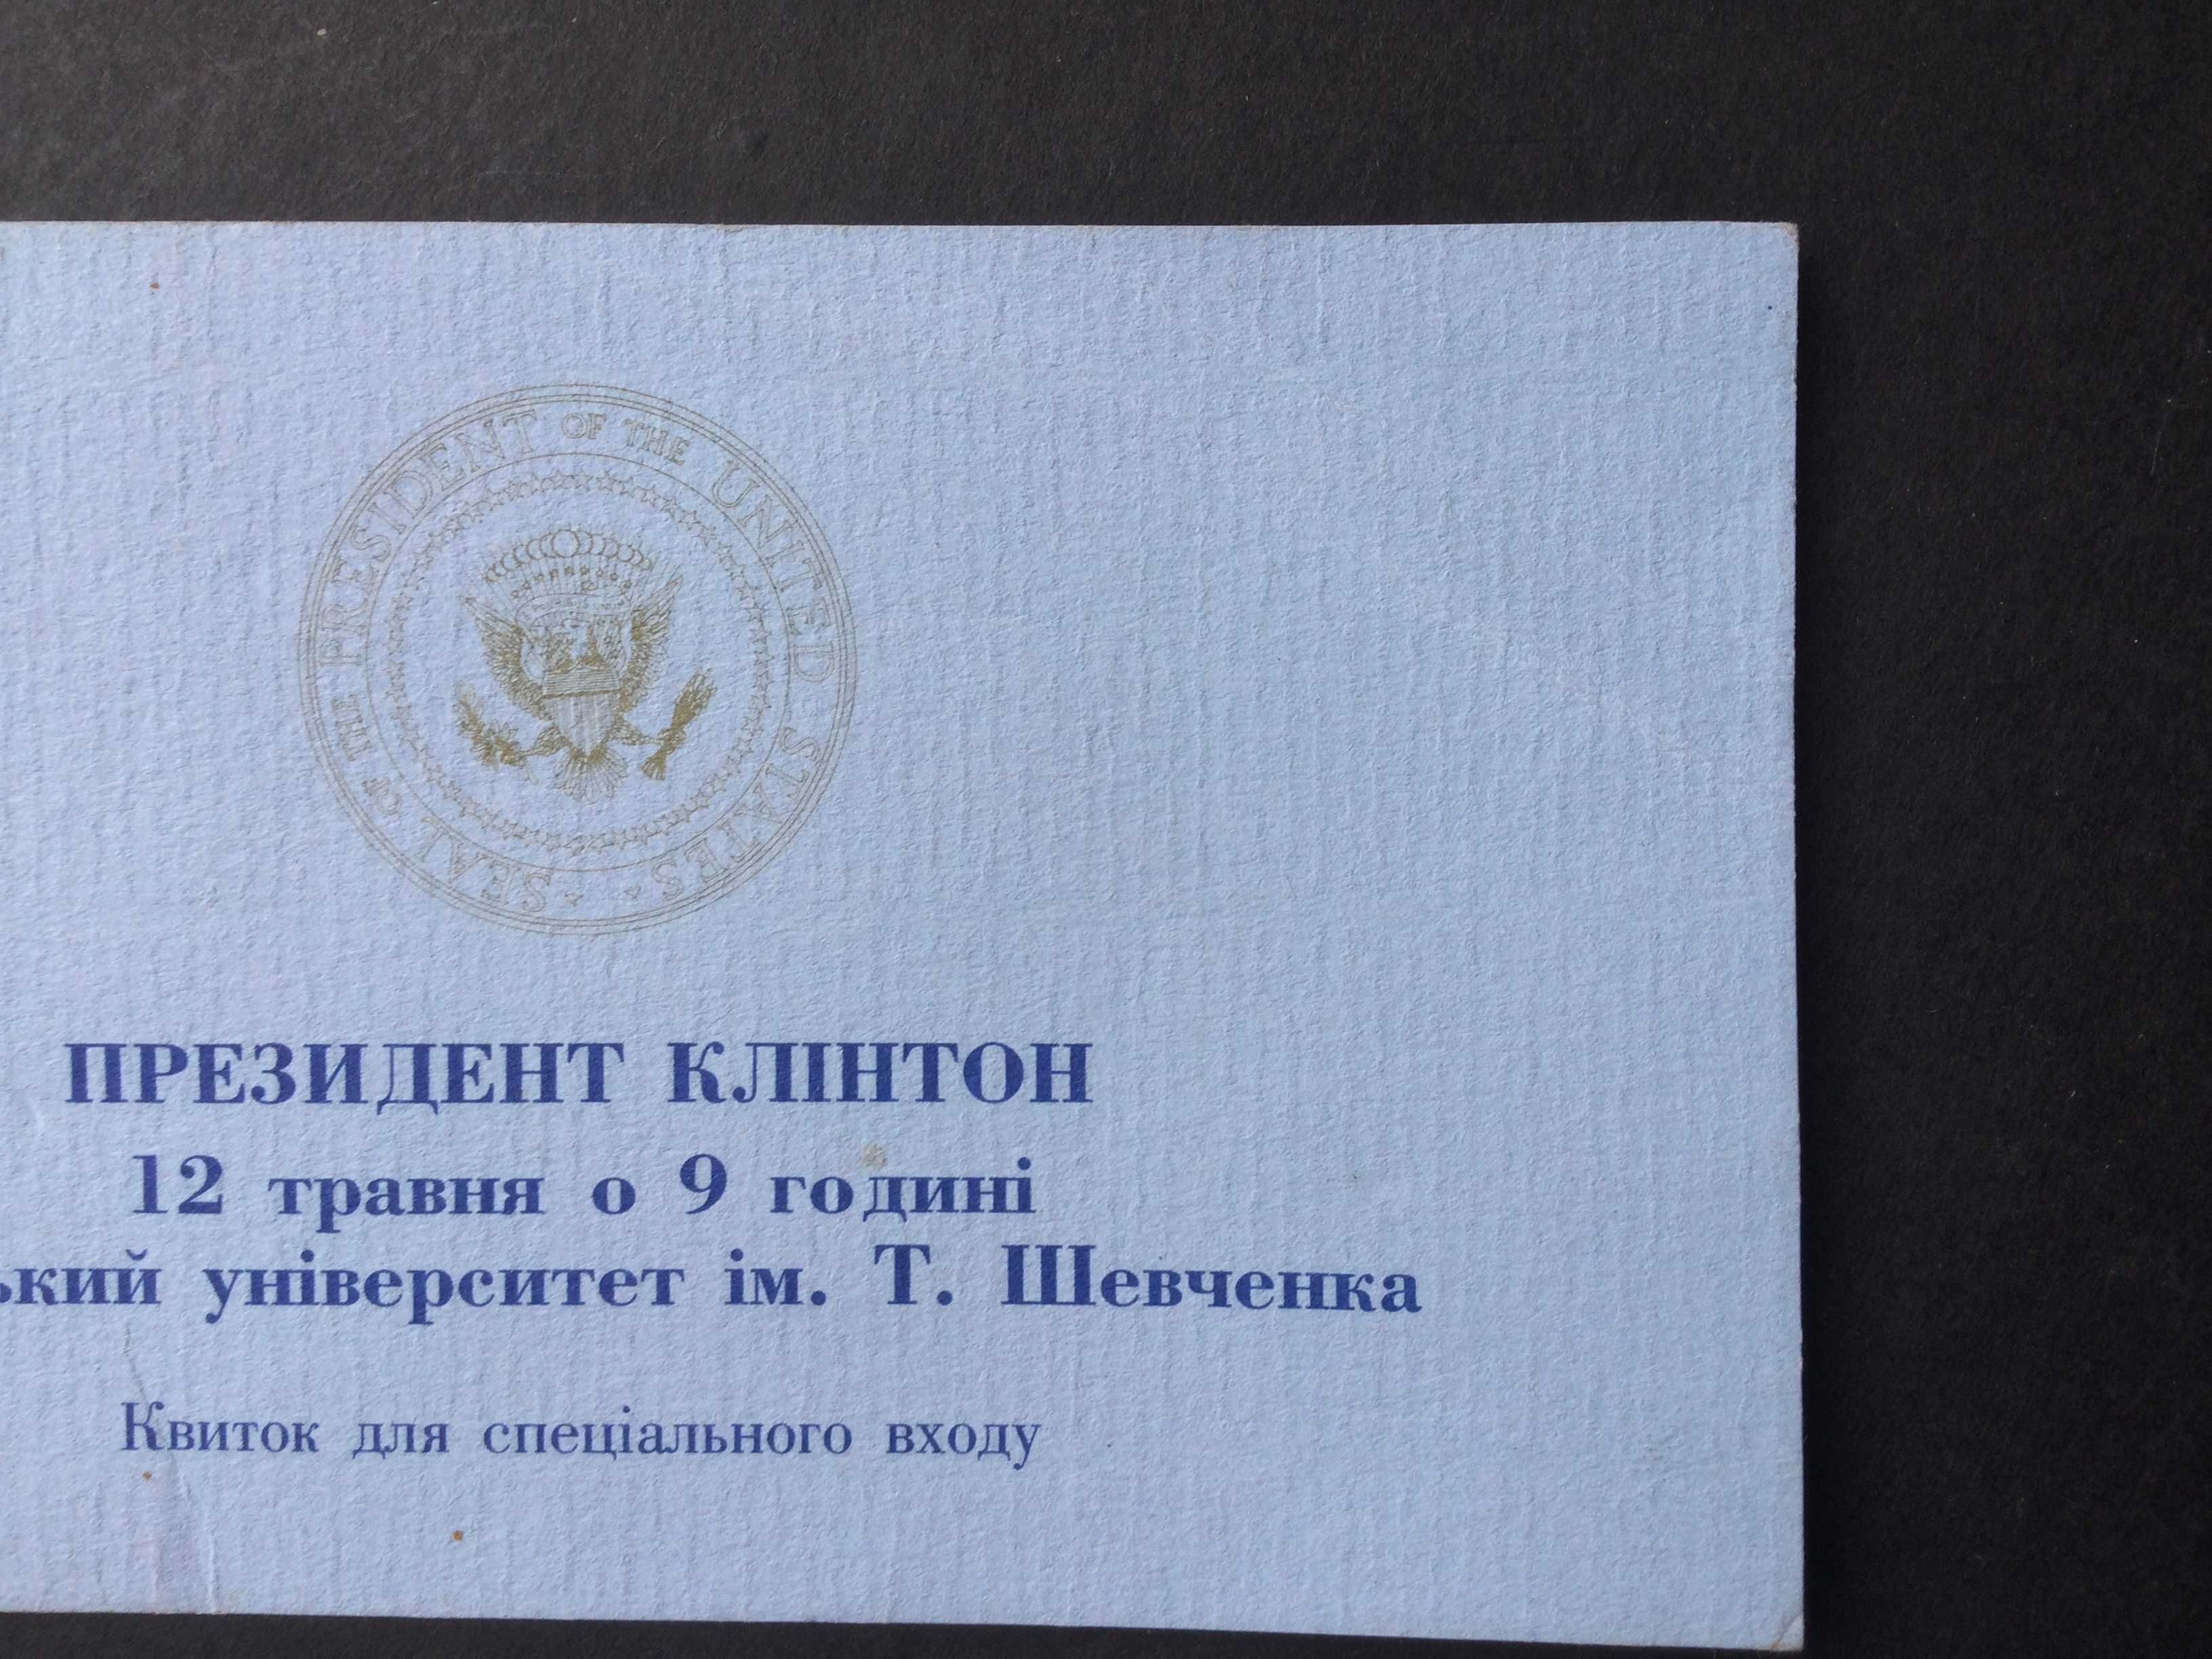 квиток спеціального входу Президент США Клинтон Київській універ 1995